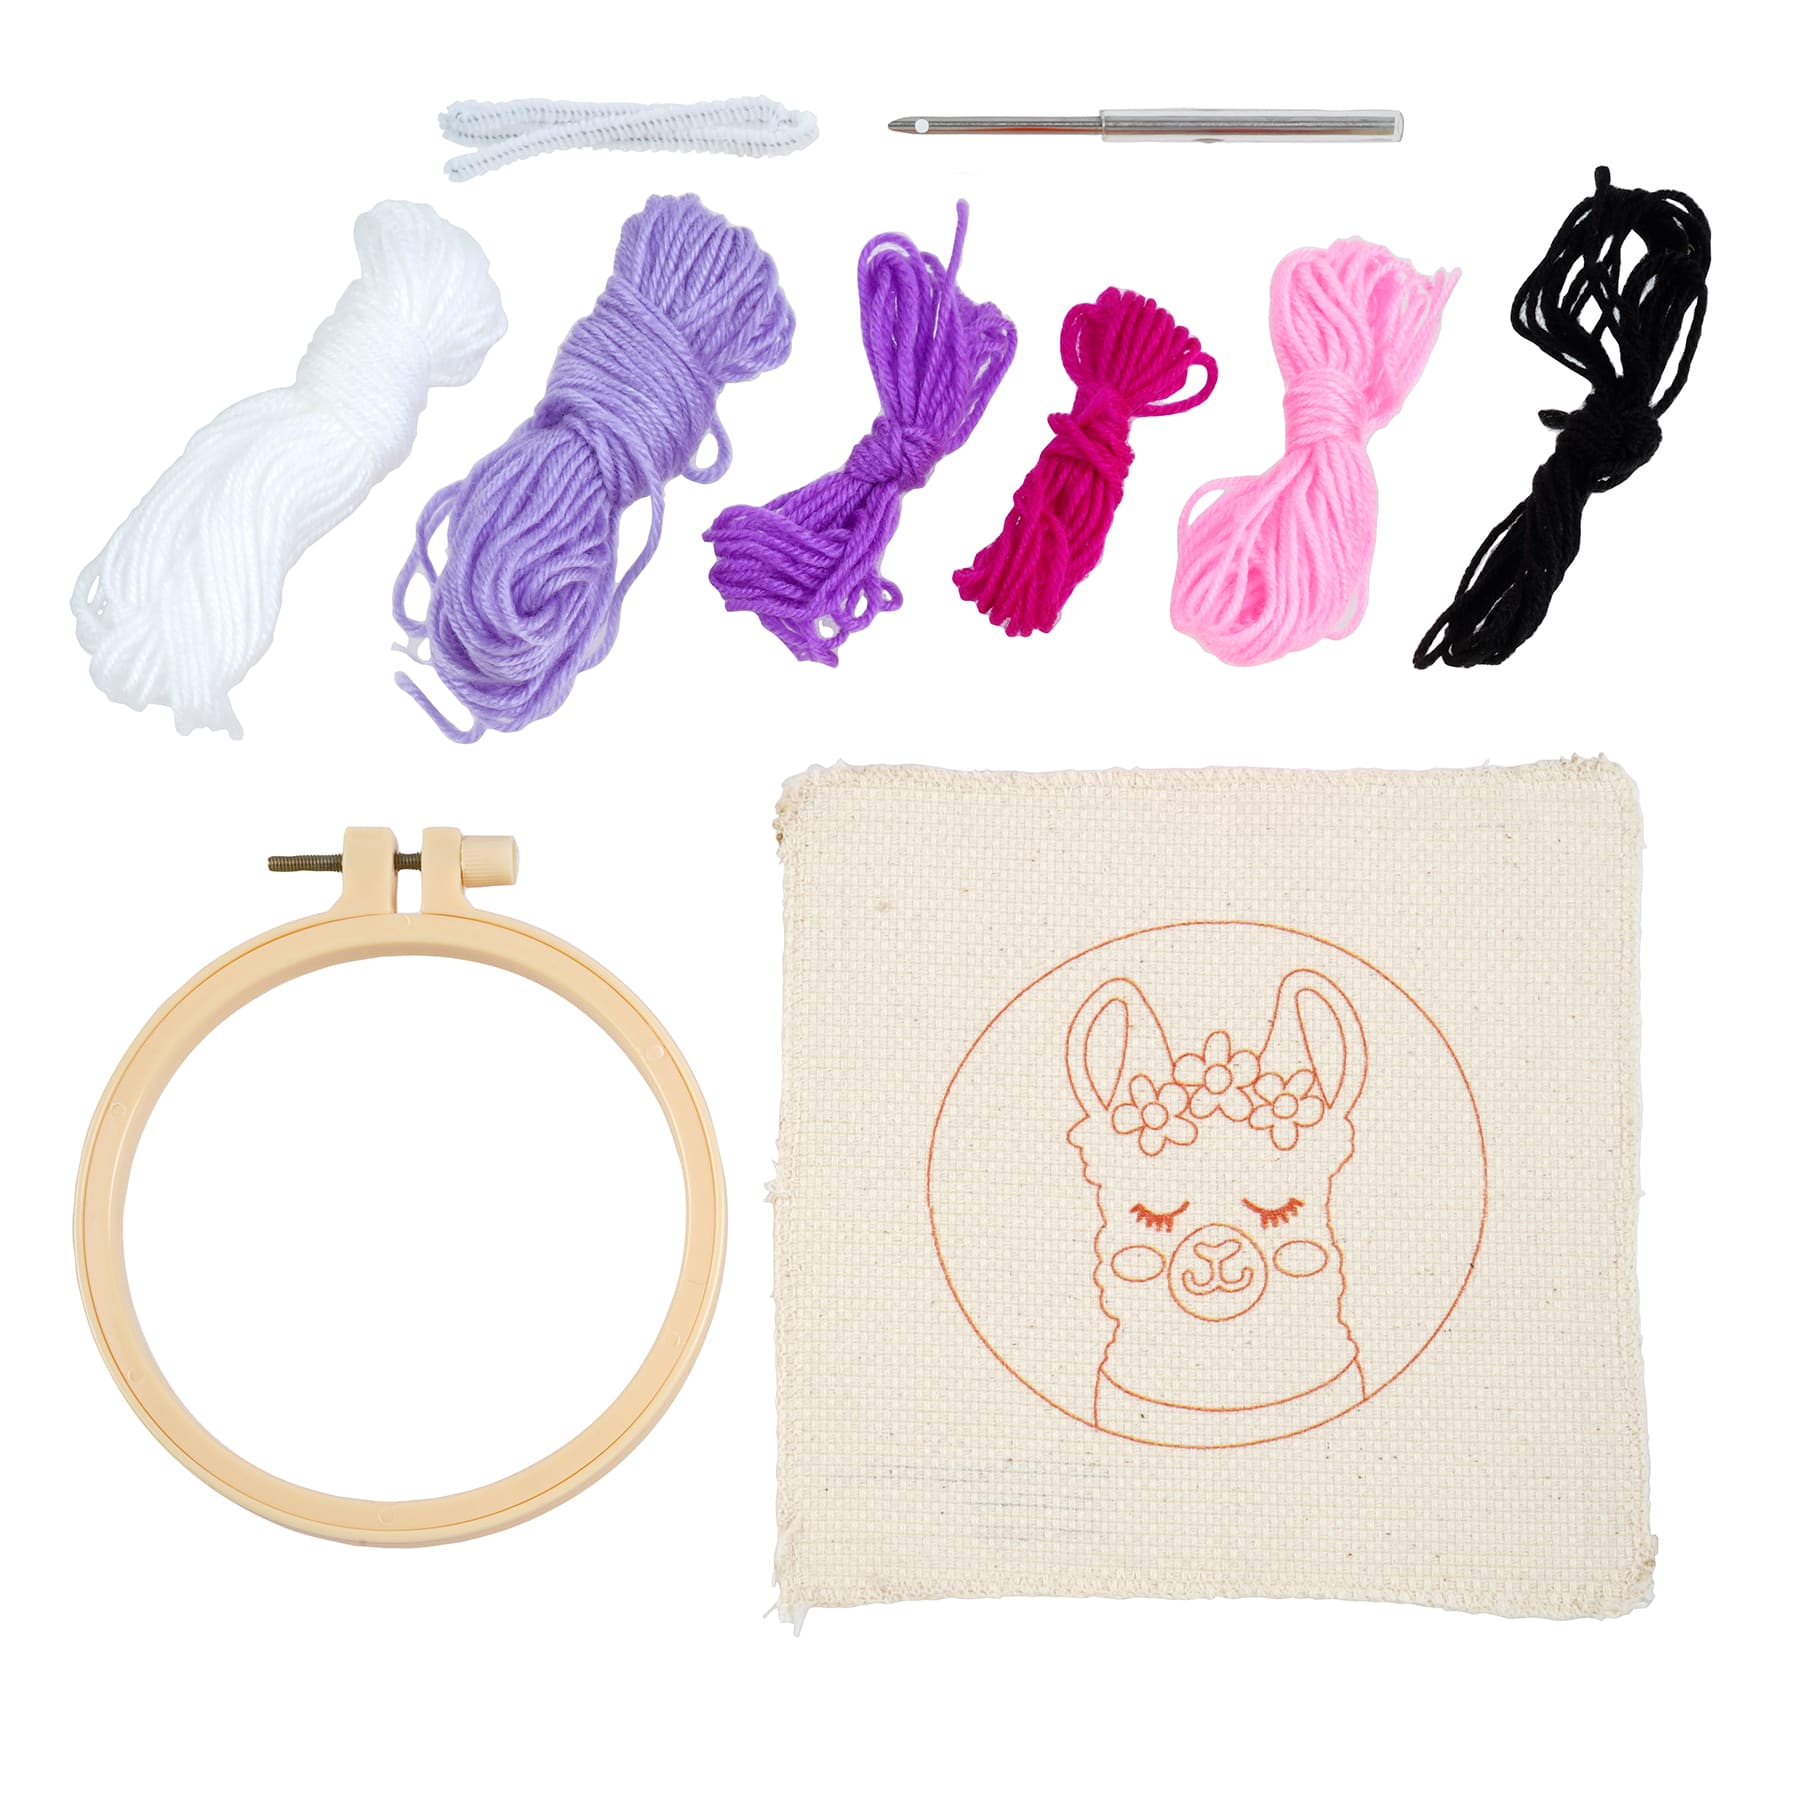 Llama Punch Needle Kit by Creatology&#x2122;